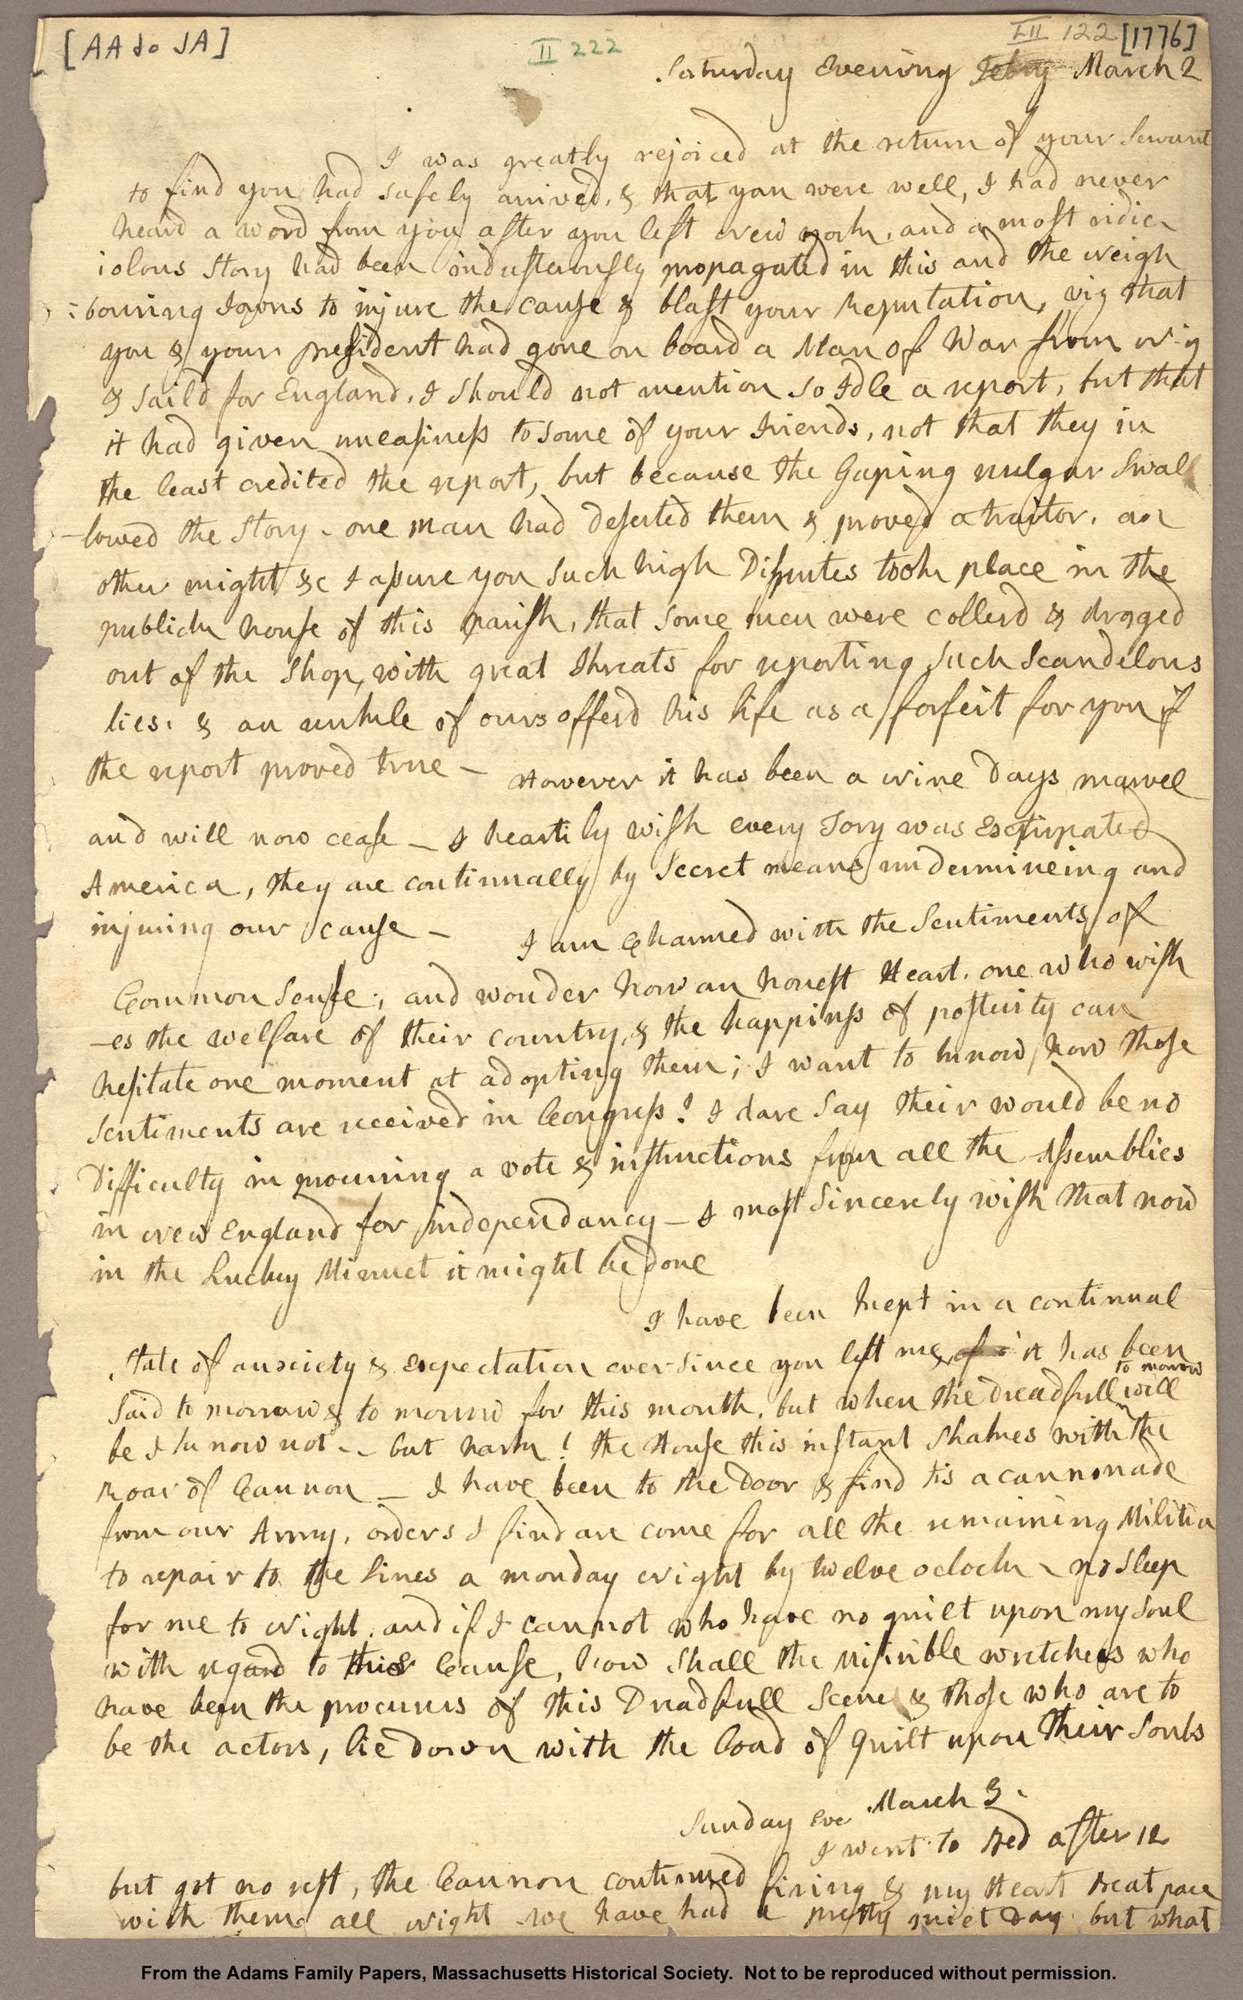 Abigail Adams's Letter to John Adams